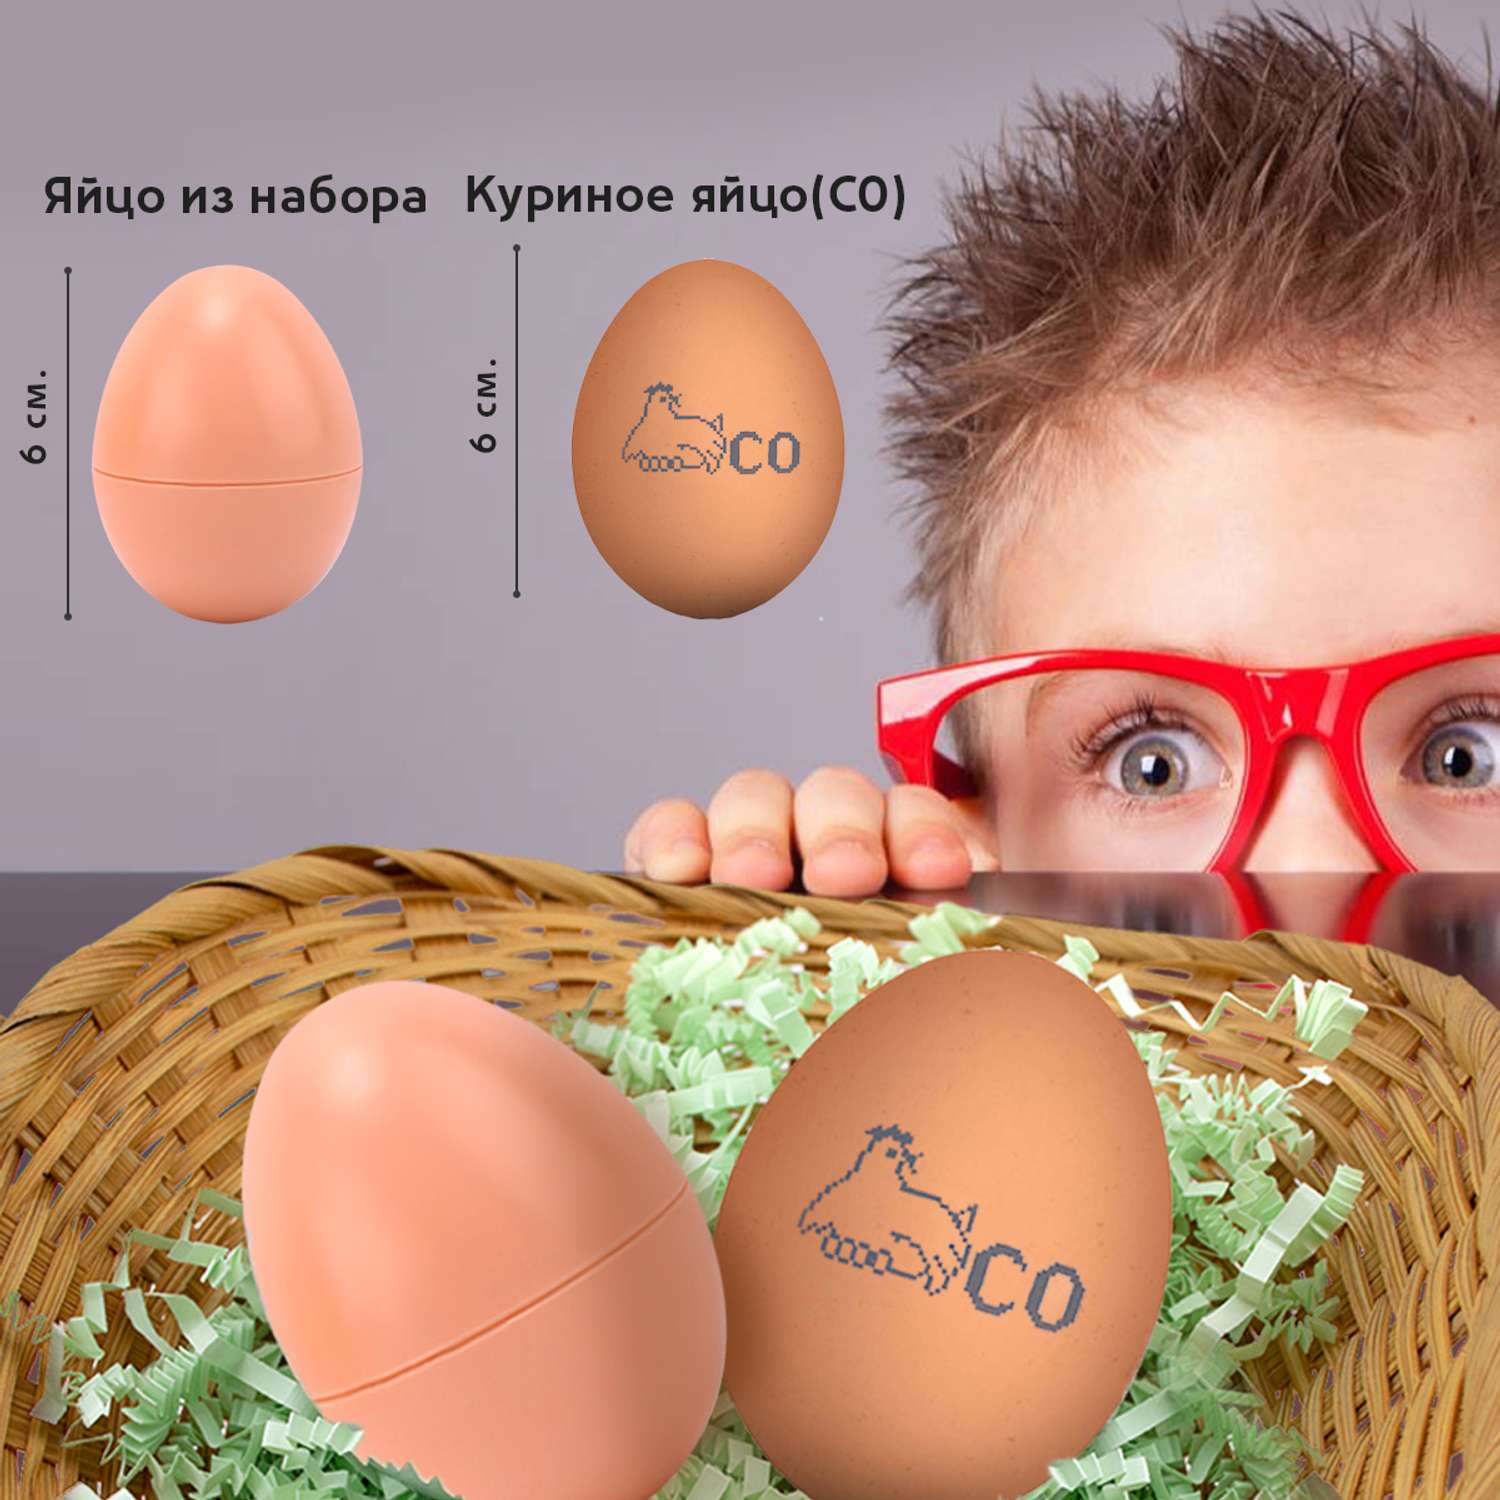 Игрушка развивающая сортер S+S найди яйцо половинка к половинке - фото 9